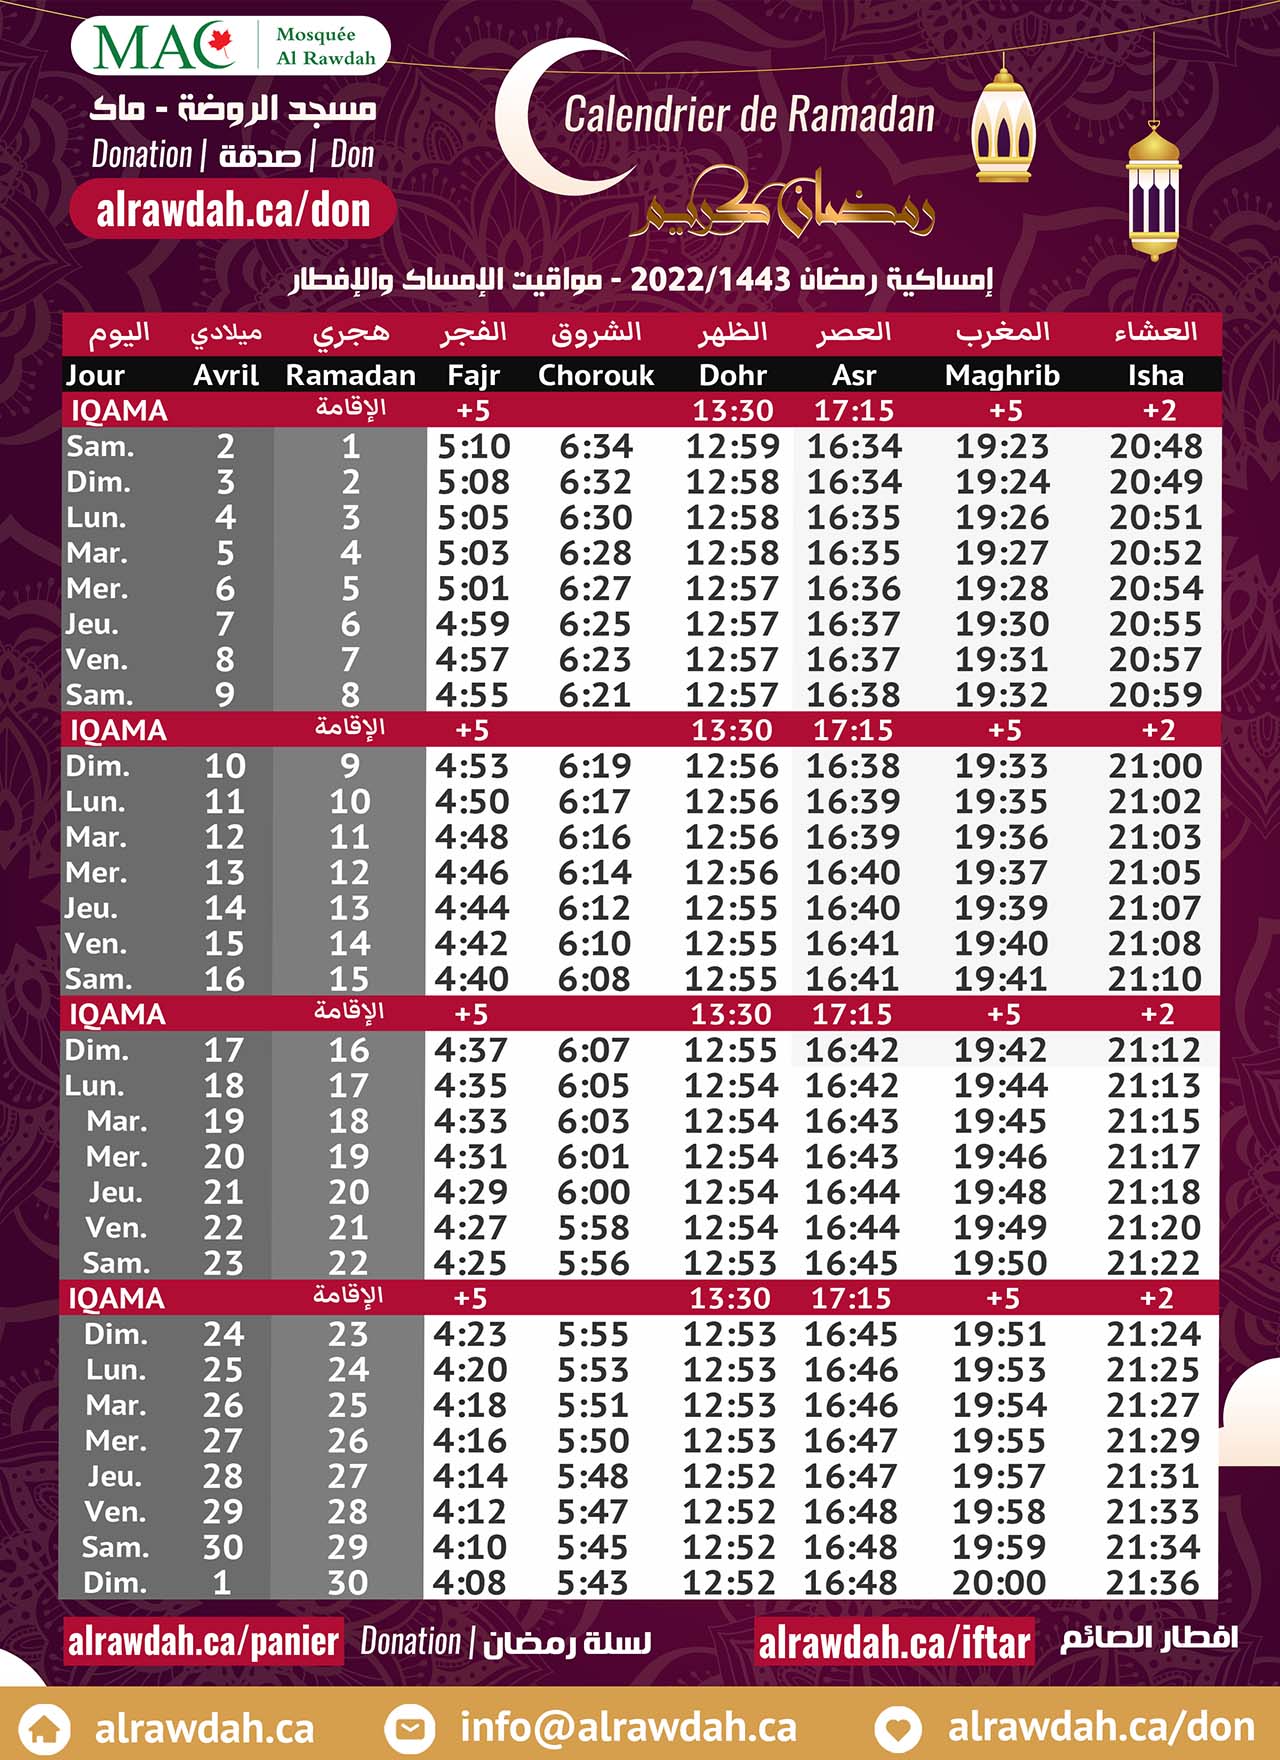 Télécharger le Calendrier Ramadan 2022/1443 pour la mosquée AlRawdah